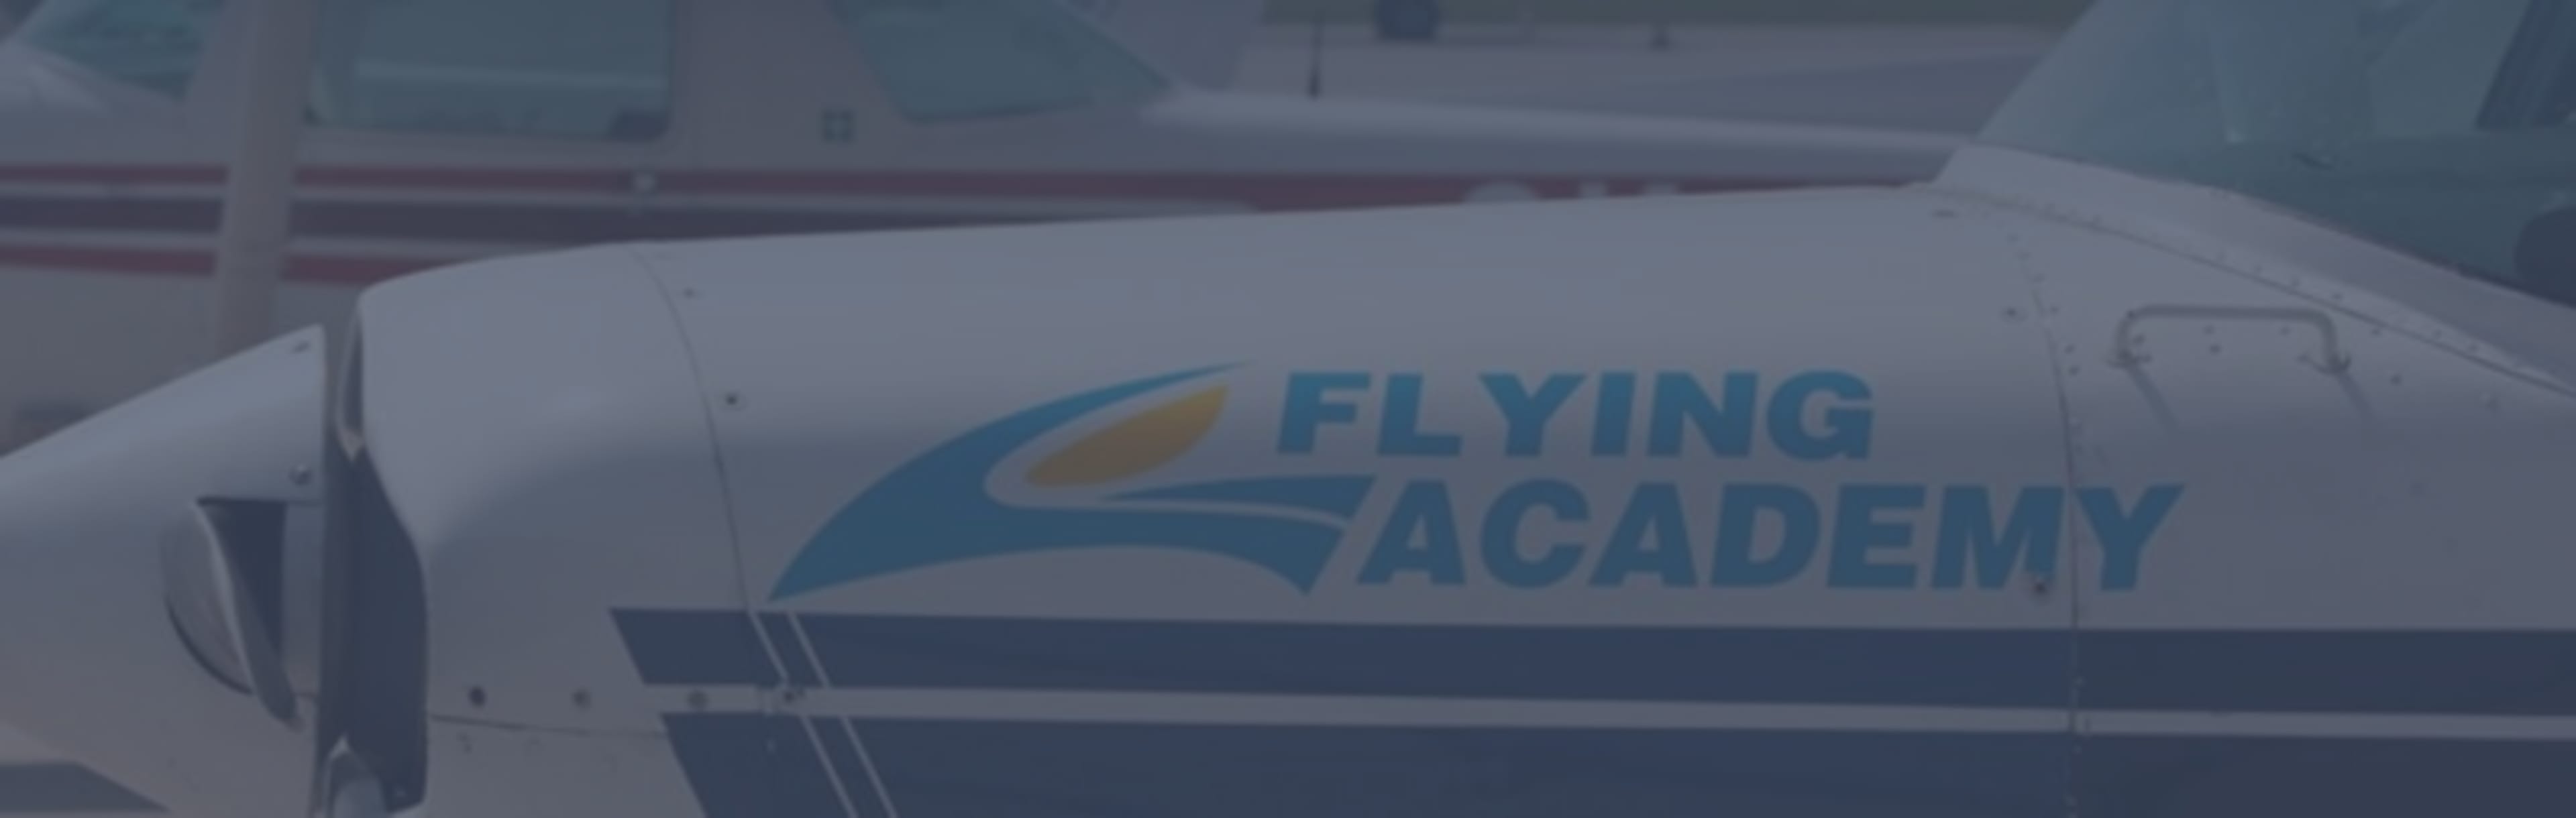 Flying Academy AESA 0-ATPL con nosotros la experiencia